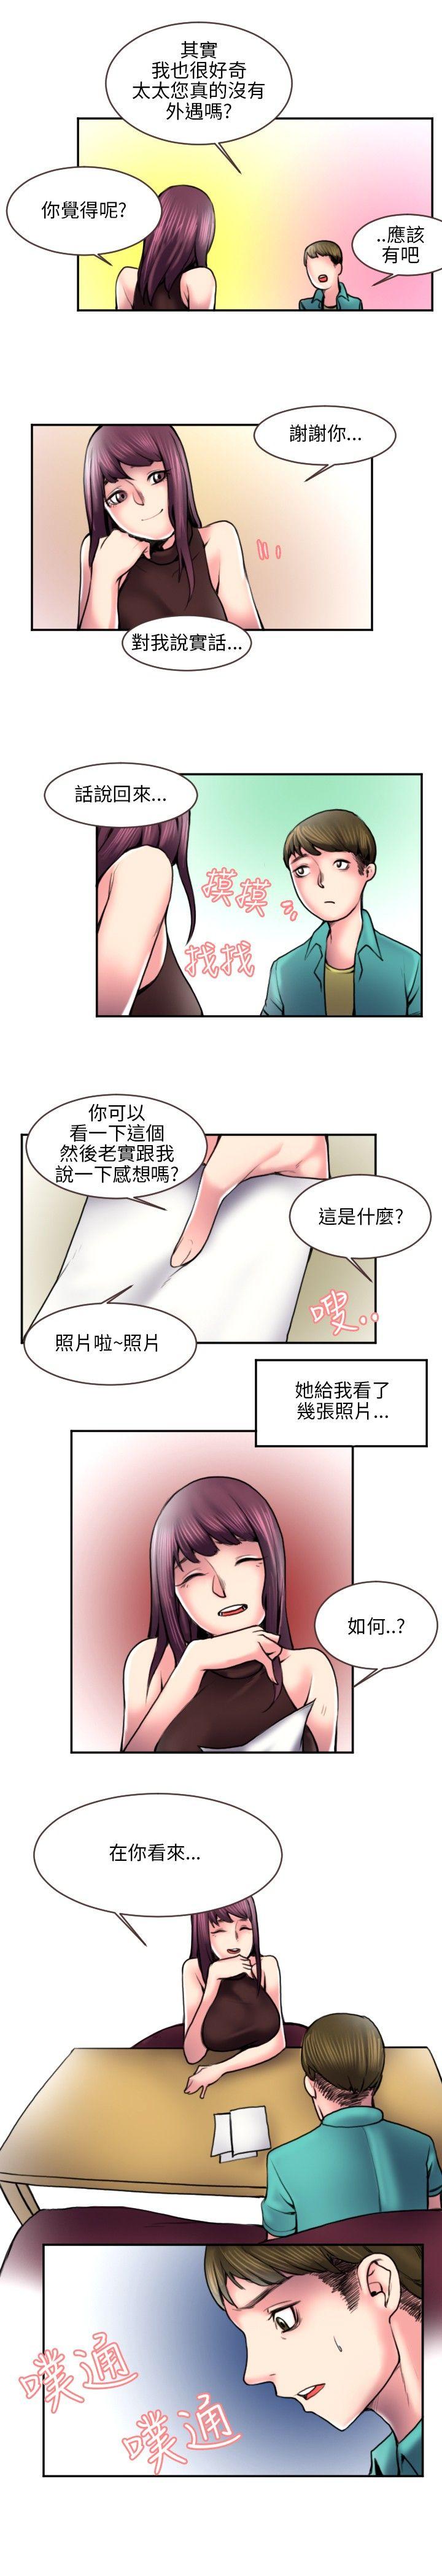 秘密Story  打工仔钓人妻(2) 漫画图片9.jpg